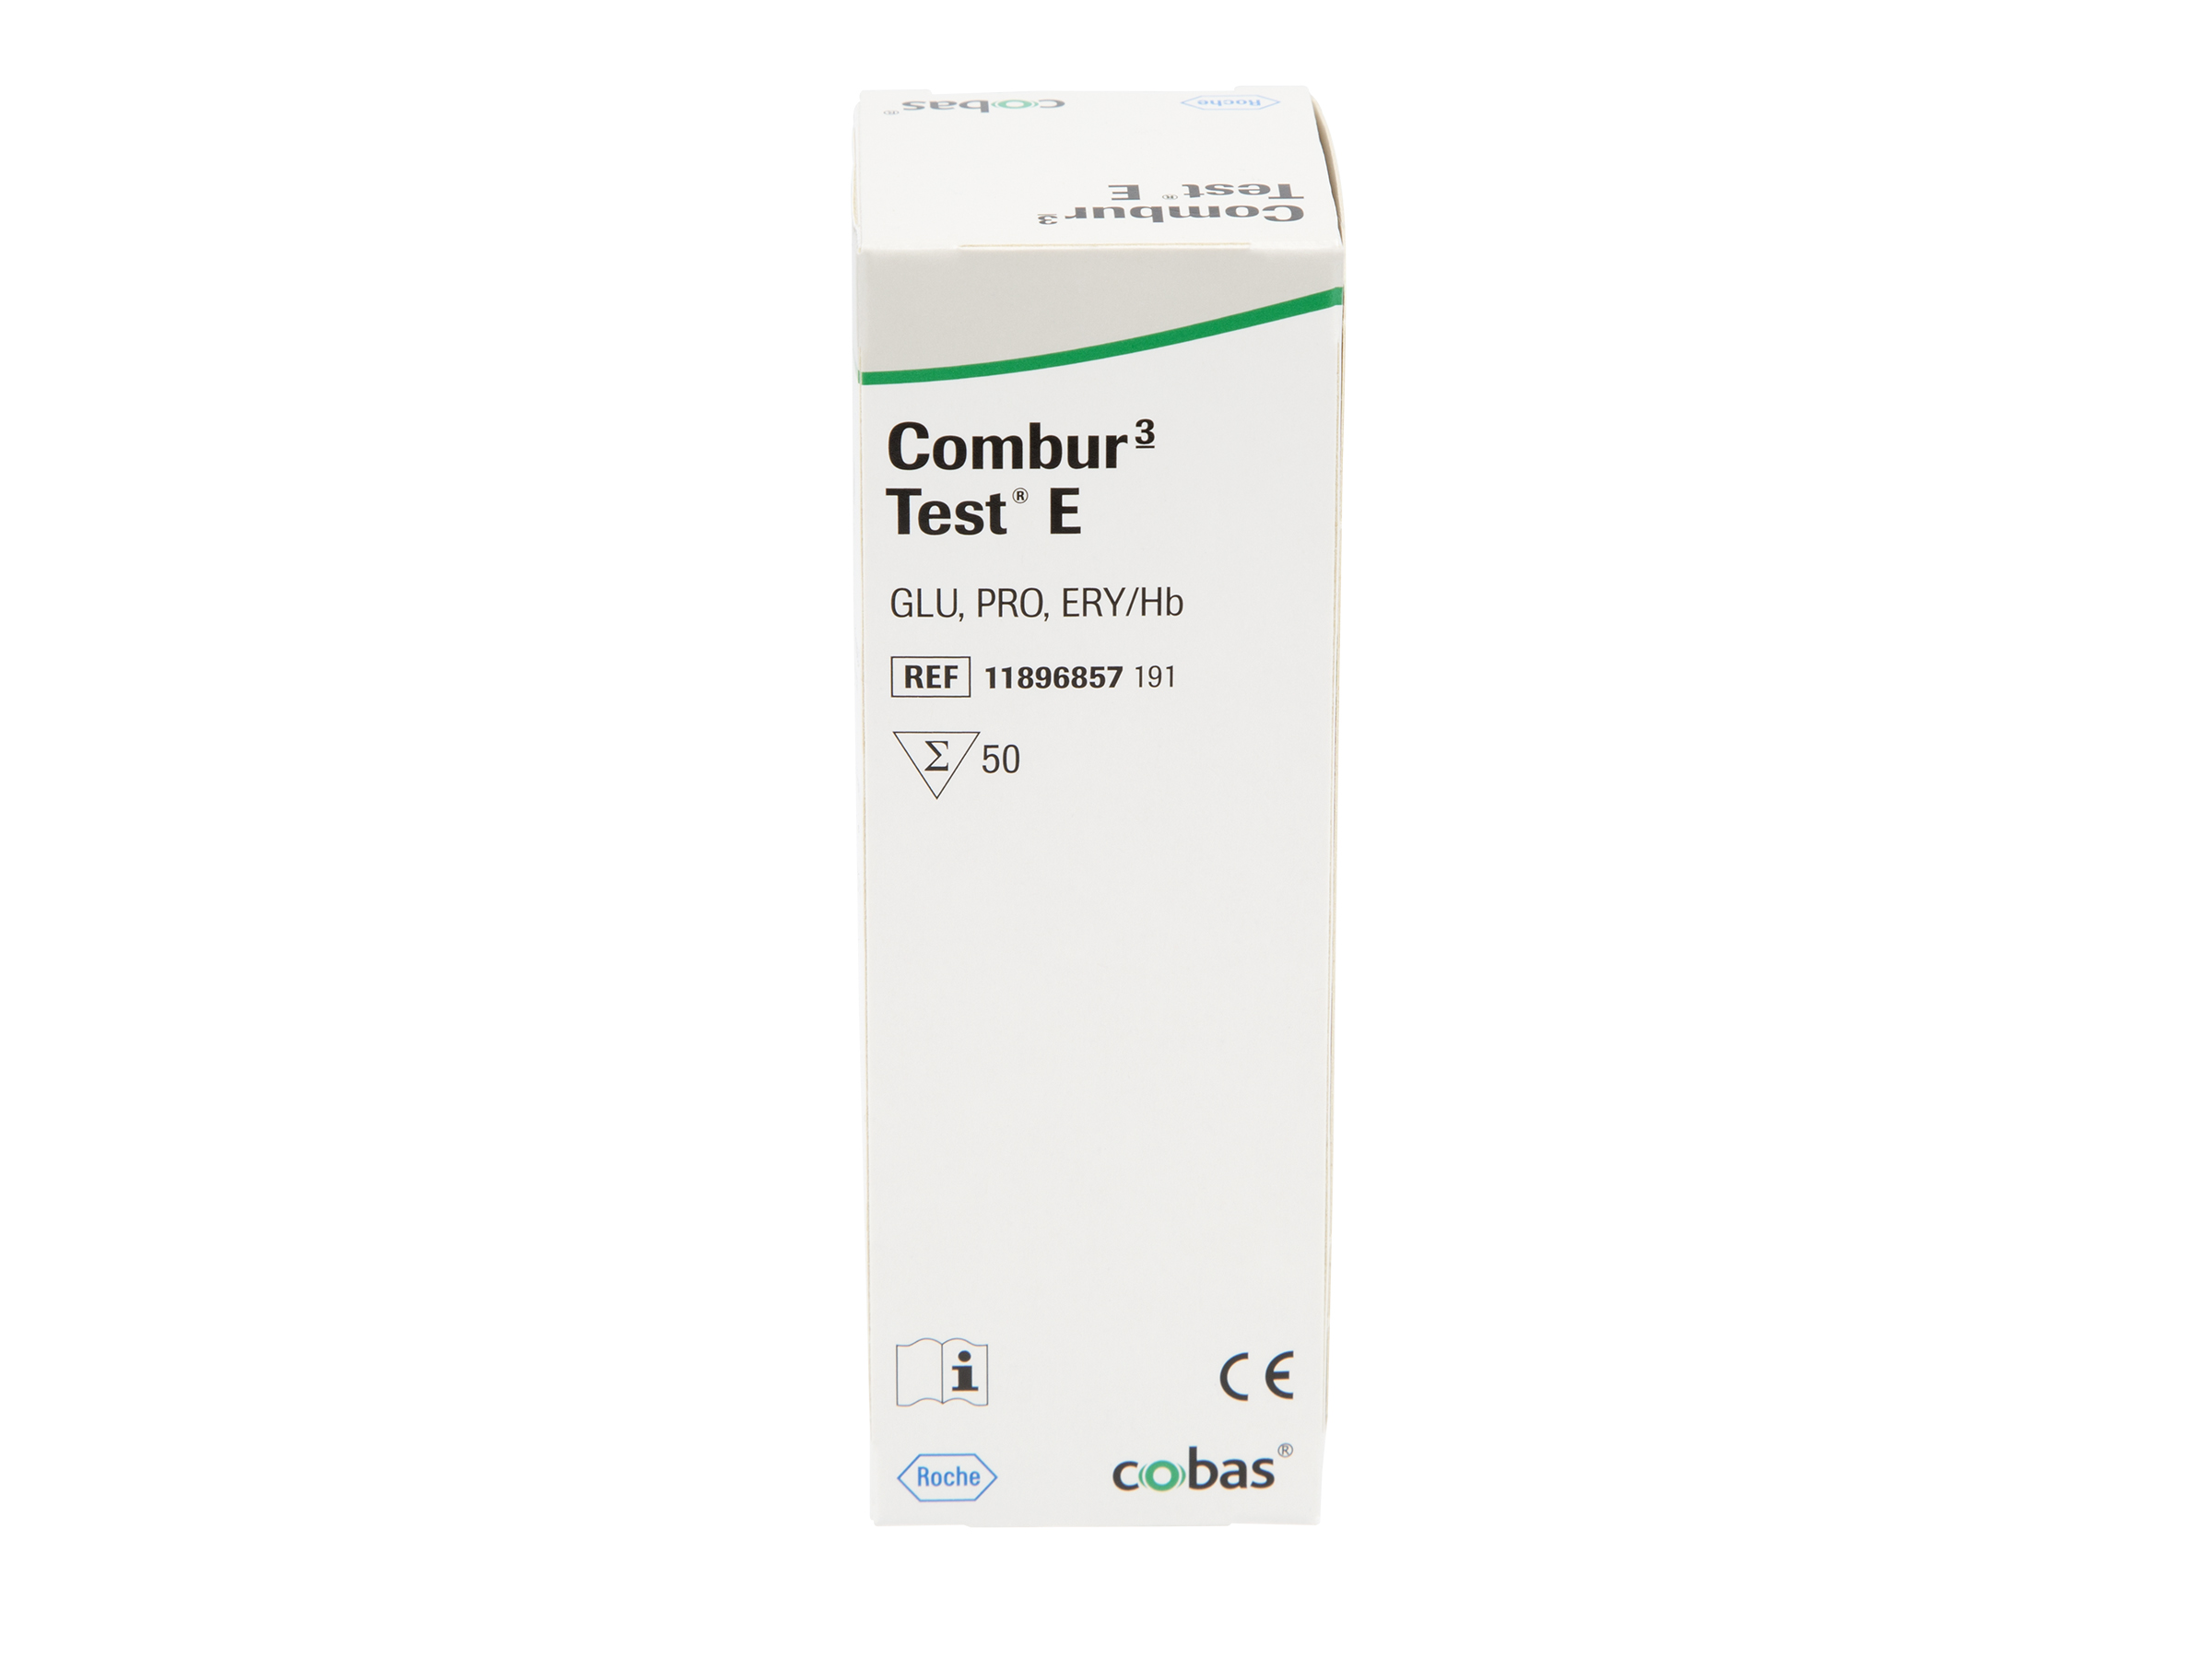 Combur 3 test E, 50 stk